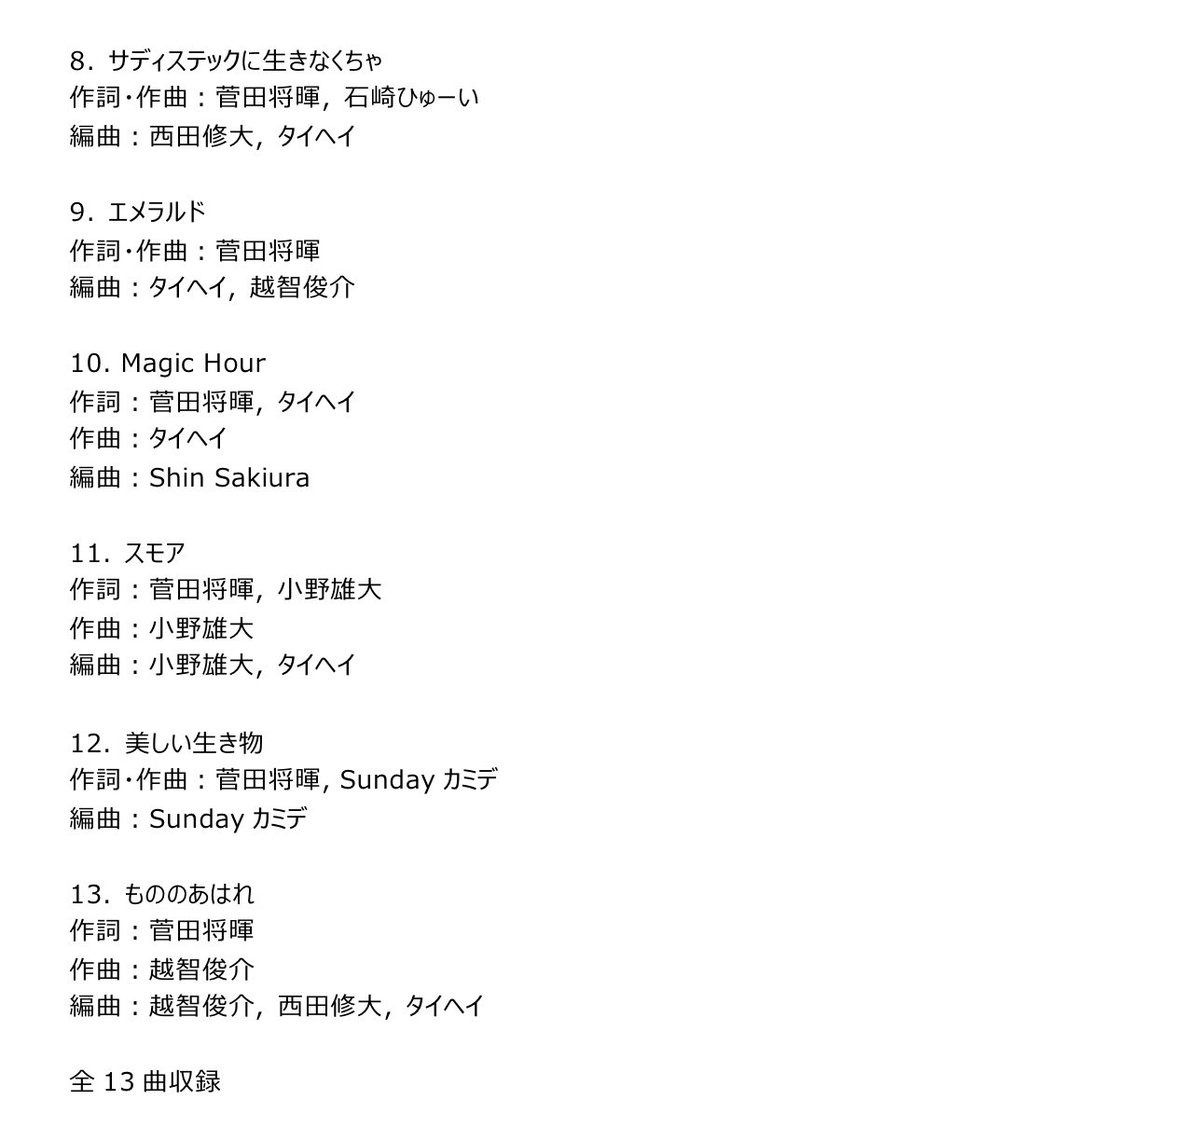 【アルバム収録曲決定❗️】 7/3(水)リリースの3rd ALBUM『SPIN』収録曲が解禁となりました✨様々なアーティストと作り上げた曲や、自身もプロデュースで参画する曲も多数収録してます🔥お楽しみに🎶🎤 ▼予約はコチラ erj.lnk.to/seUzR8 #菅田将暉SPIN